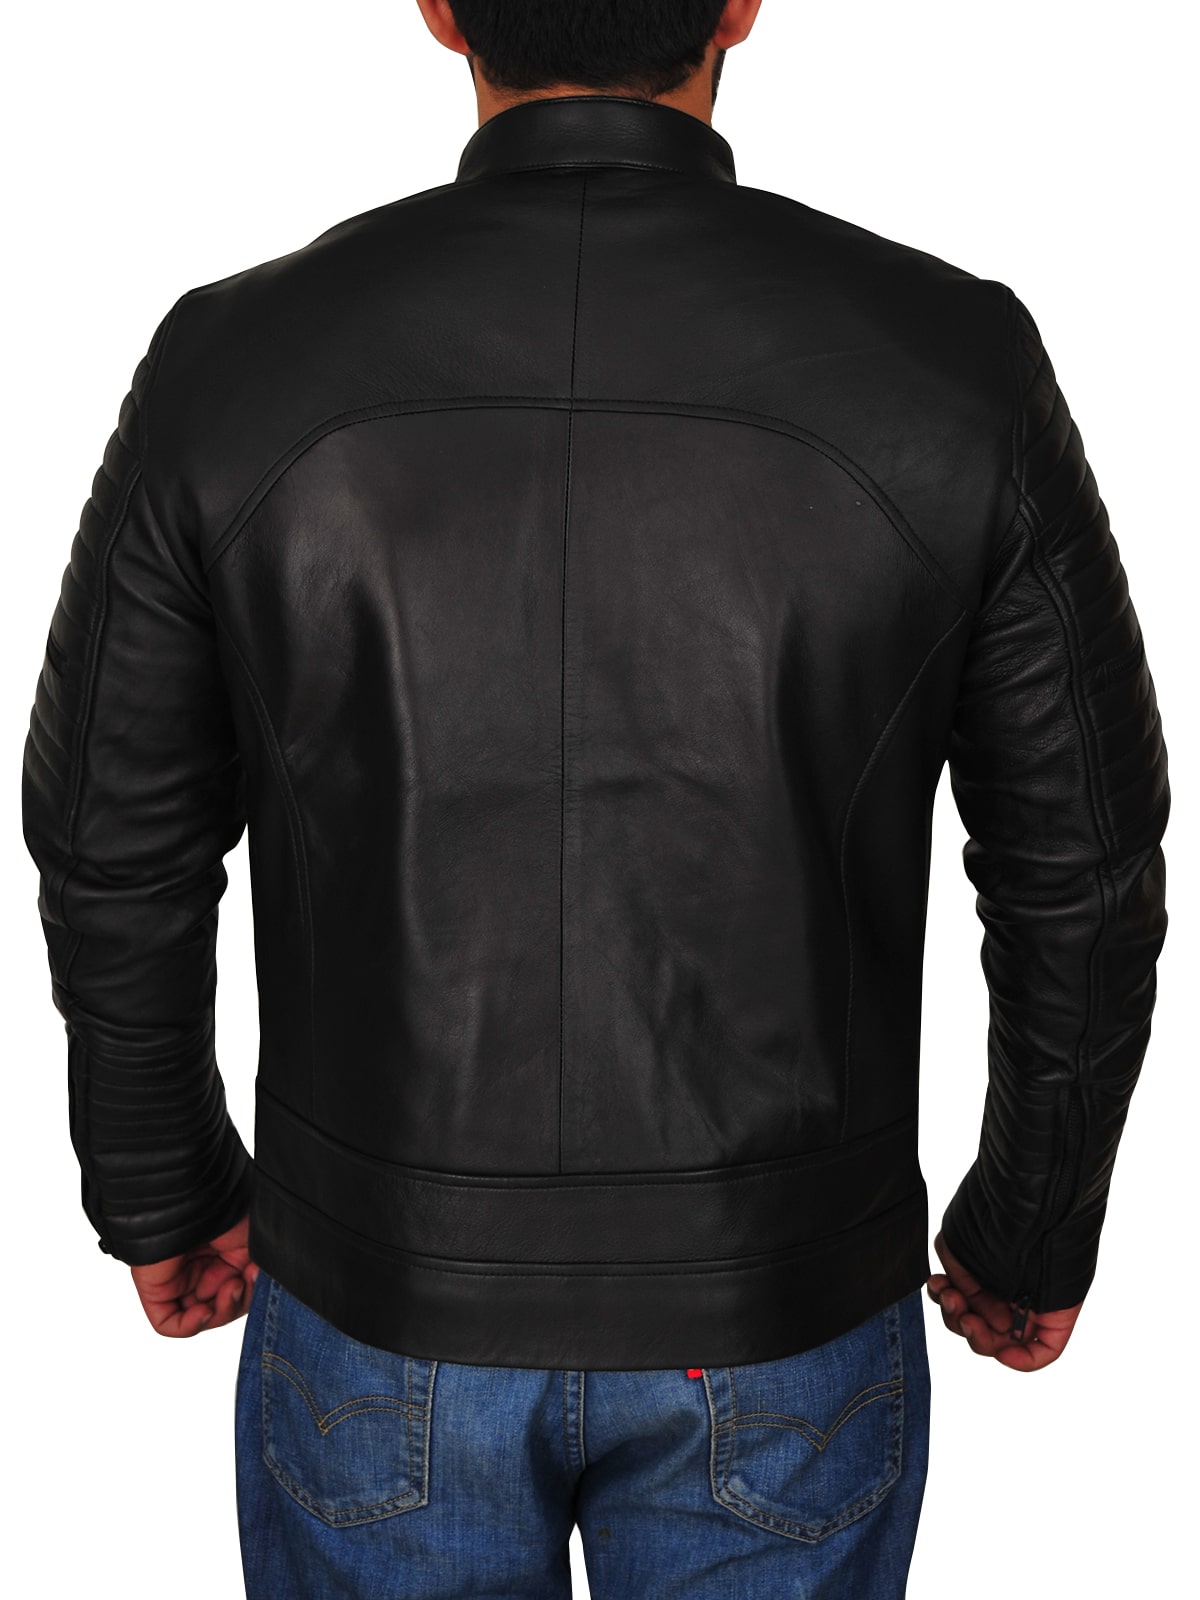 Dapper Black Leather Jacket For Men